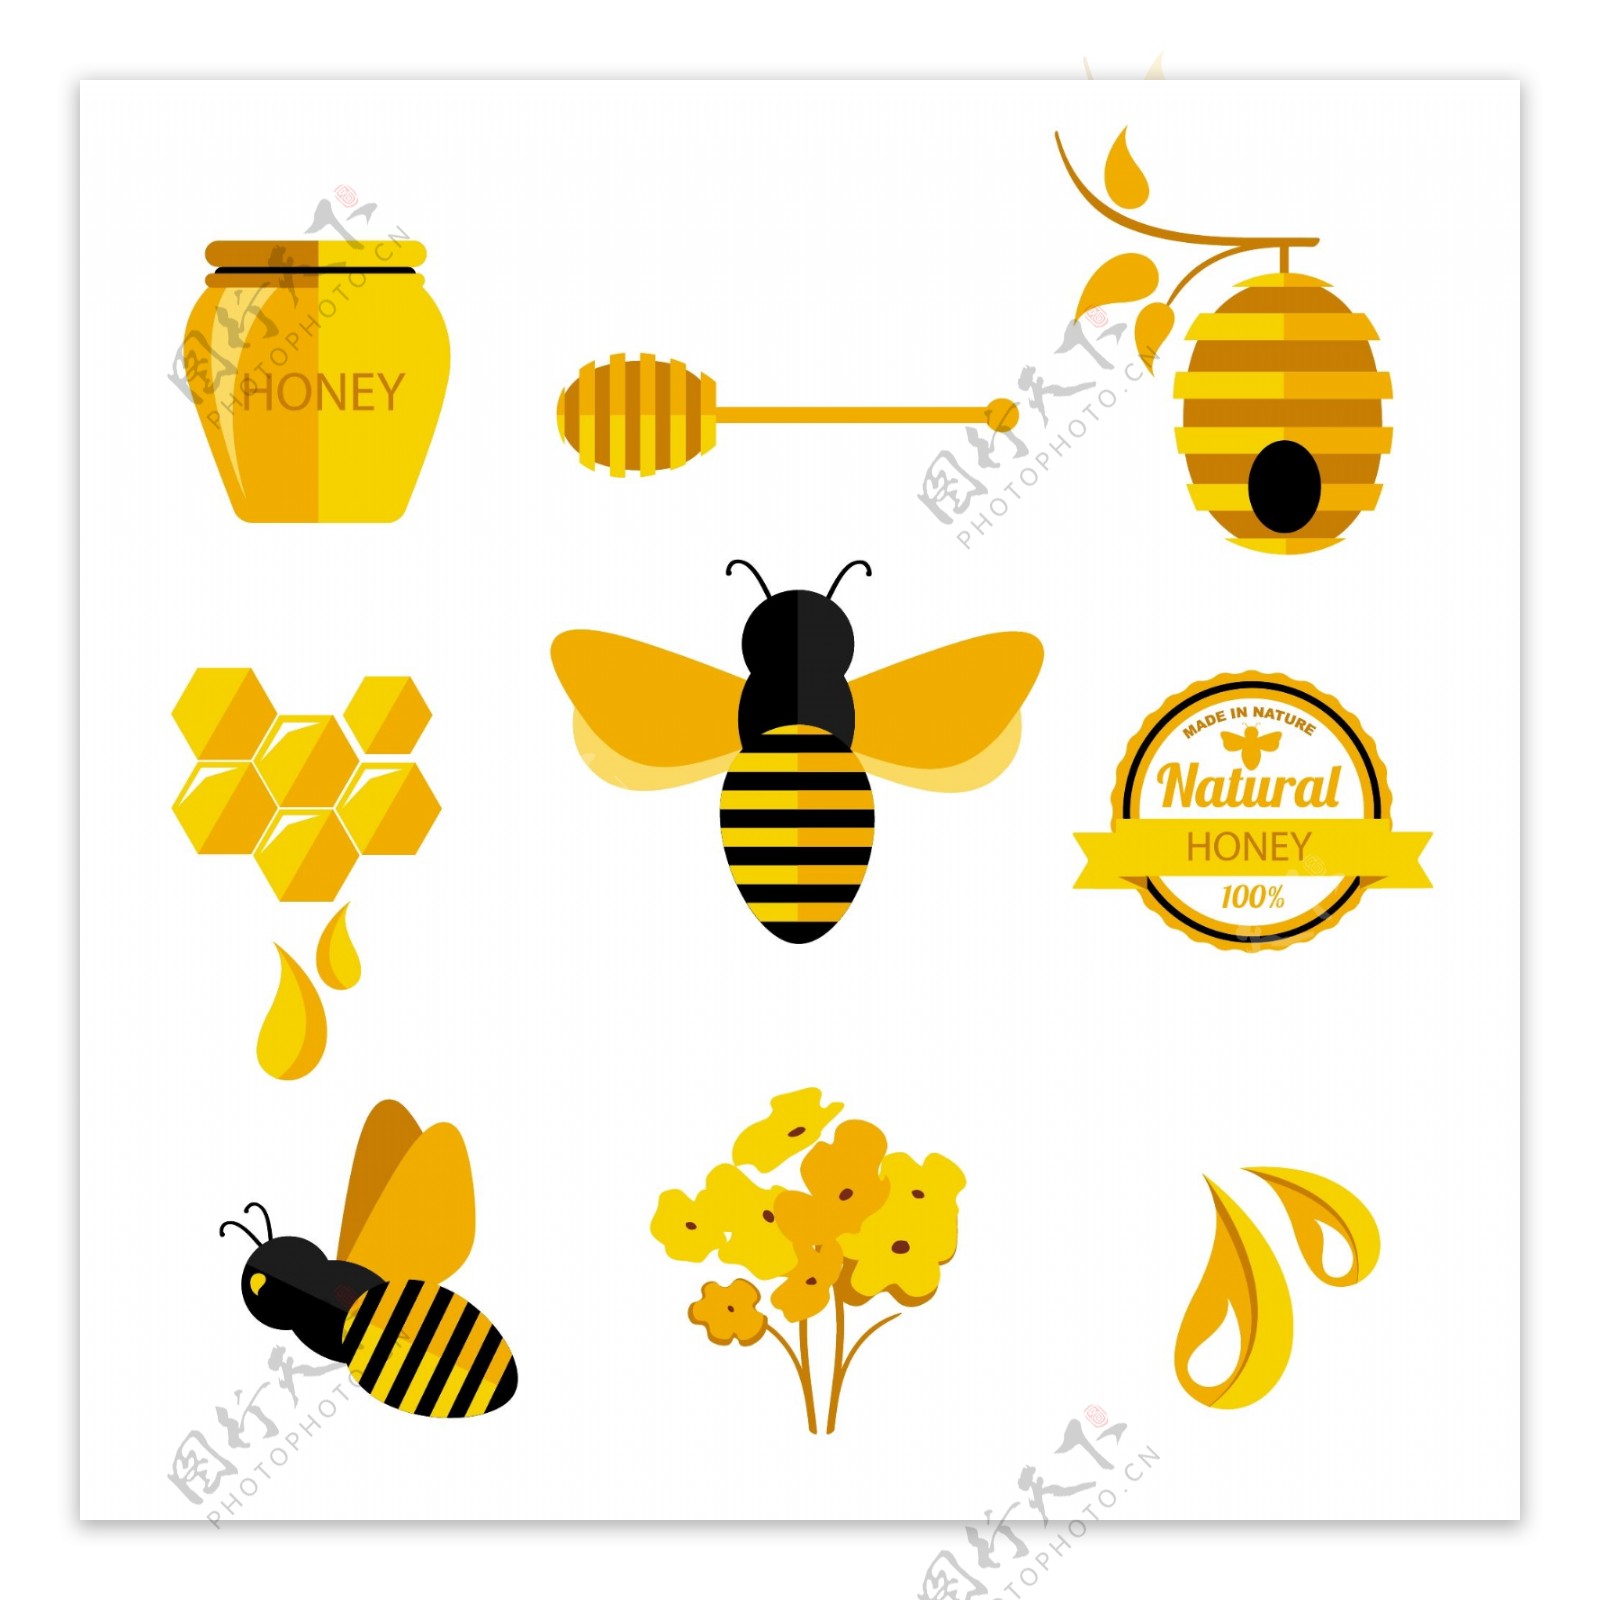 蜂蜜与蜜蜂图标